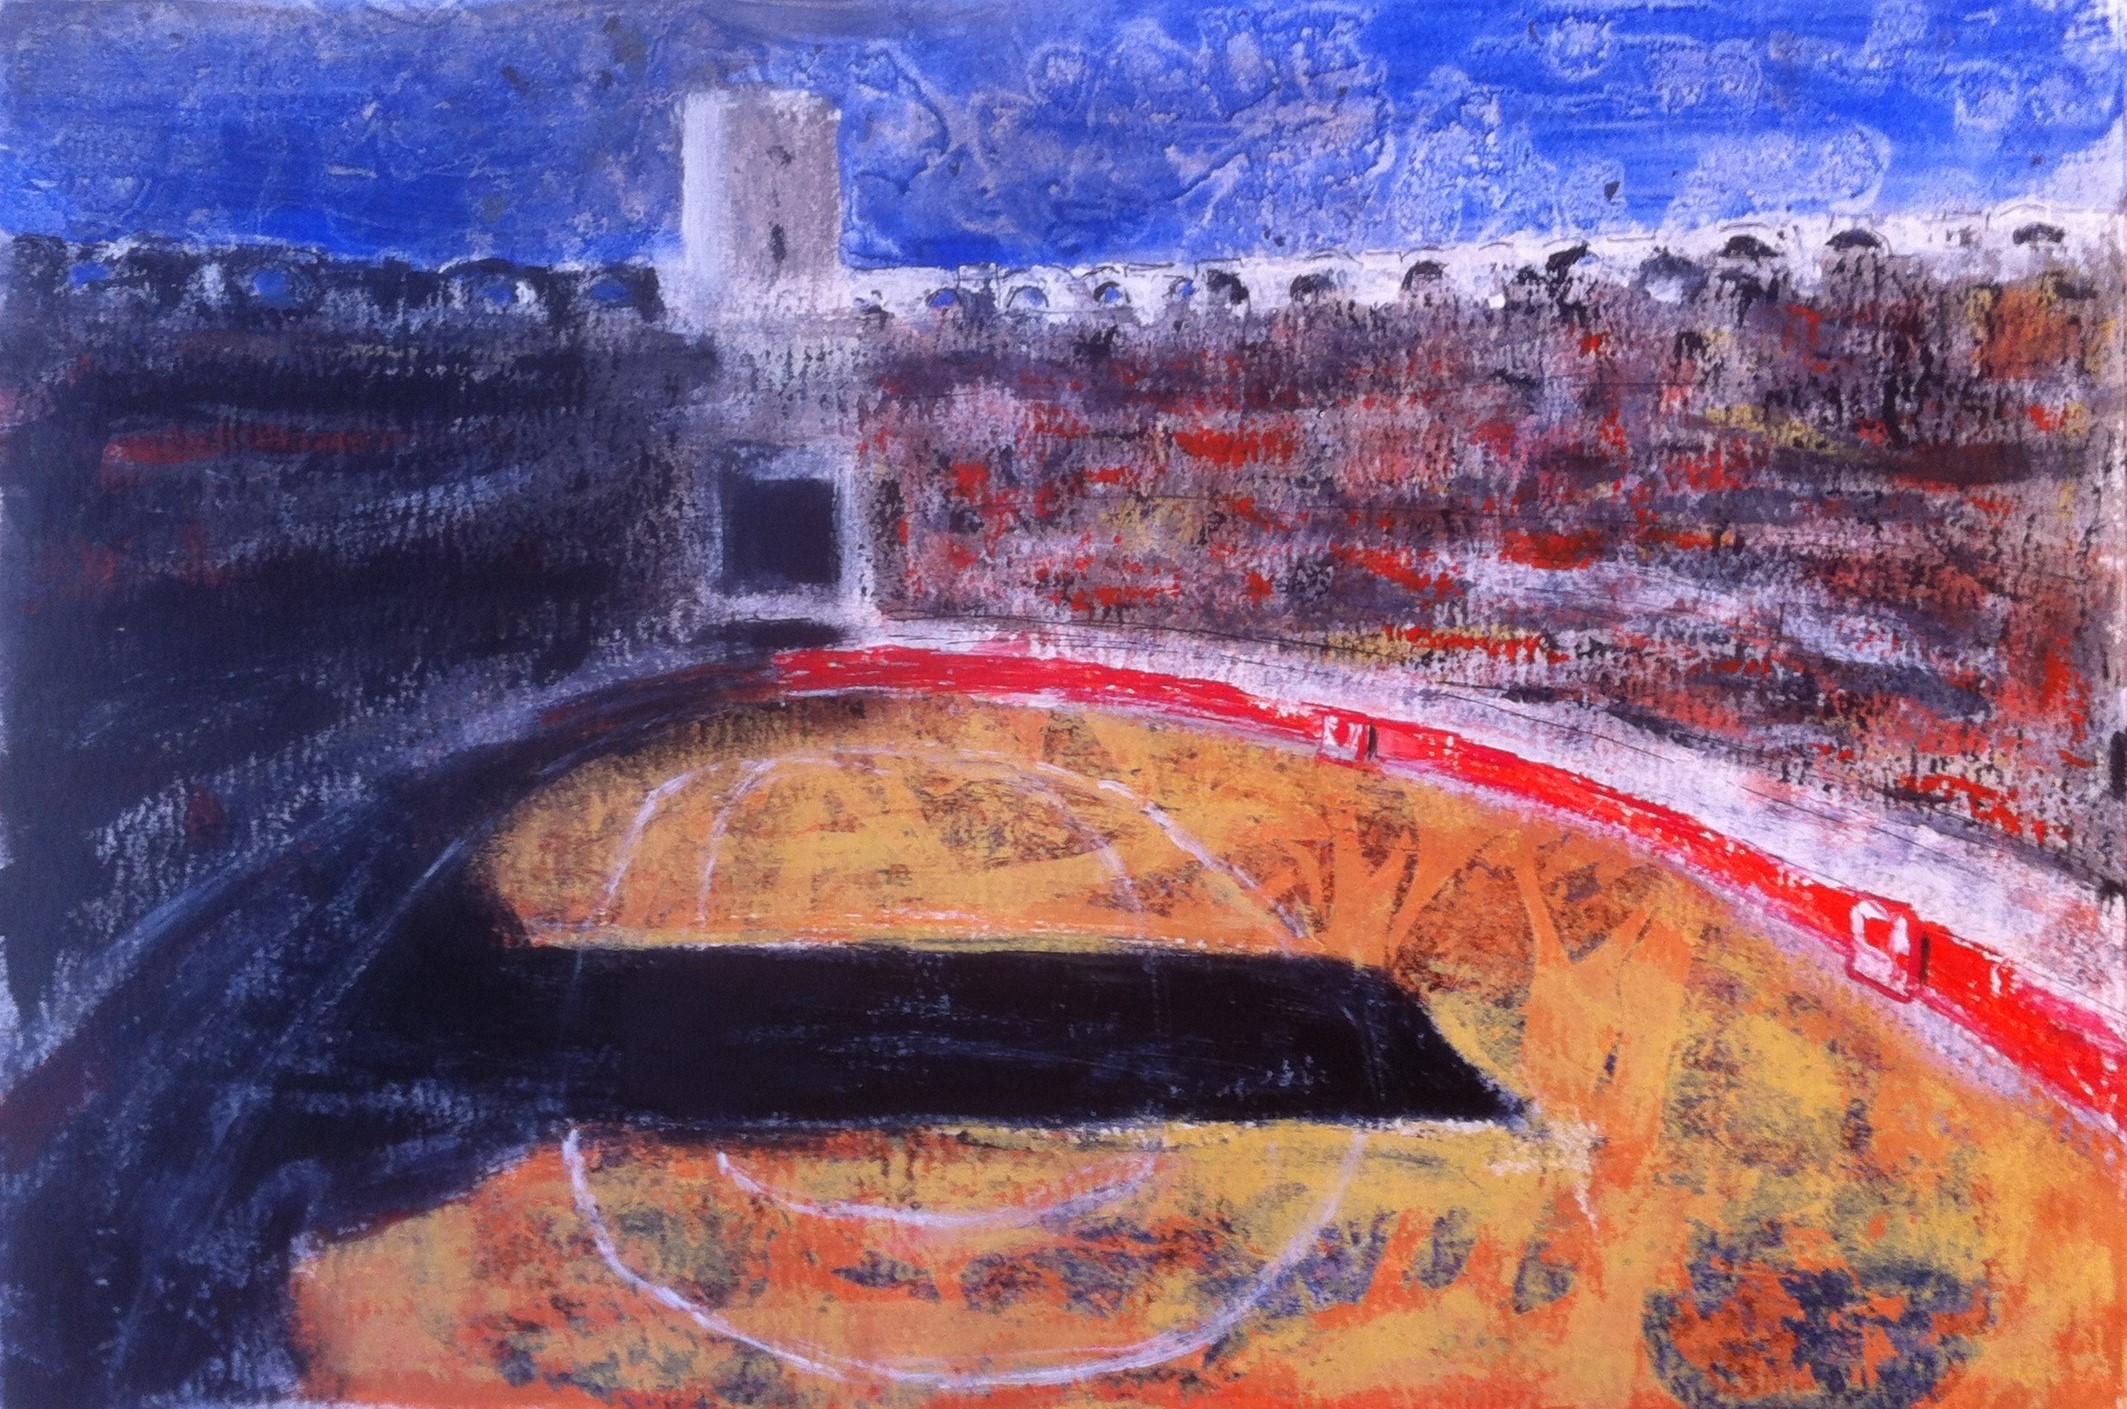 N°1366 - Sol y sombra aux arènes d'Arles un dimanche pascal - Acrylique sur papier - 37 x 55 cm - 23 avril 2014